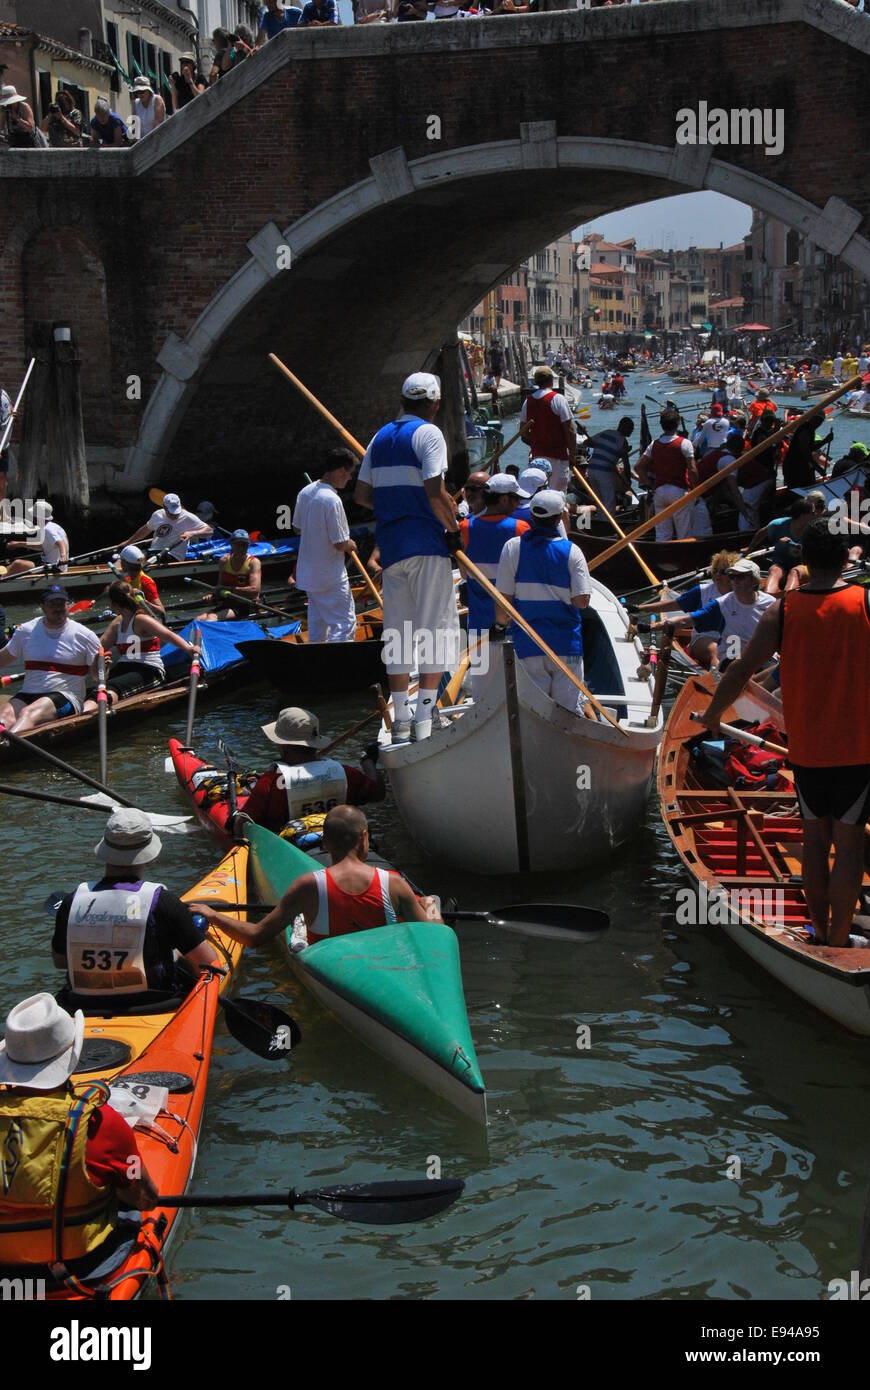 Italien. Venedig. Vogalonga 2014. Große und Kanus. Ruder. Warteschlange unter Brücke bekommen. Chaos. Blick durch die Brücke. Stockfoto